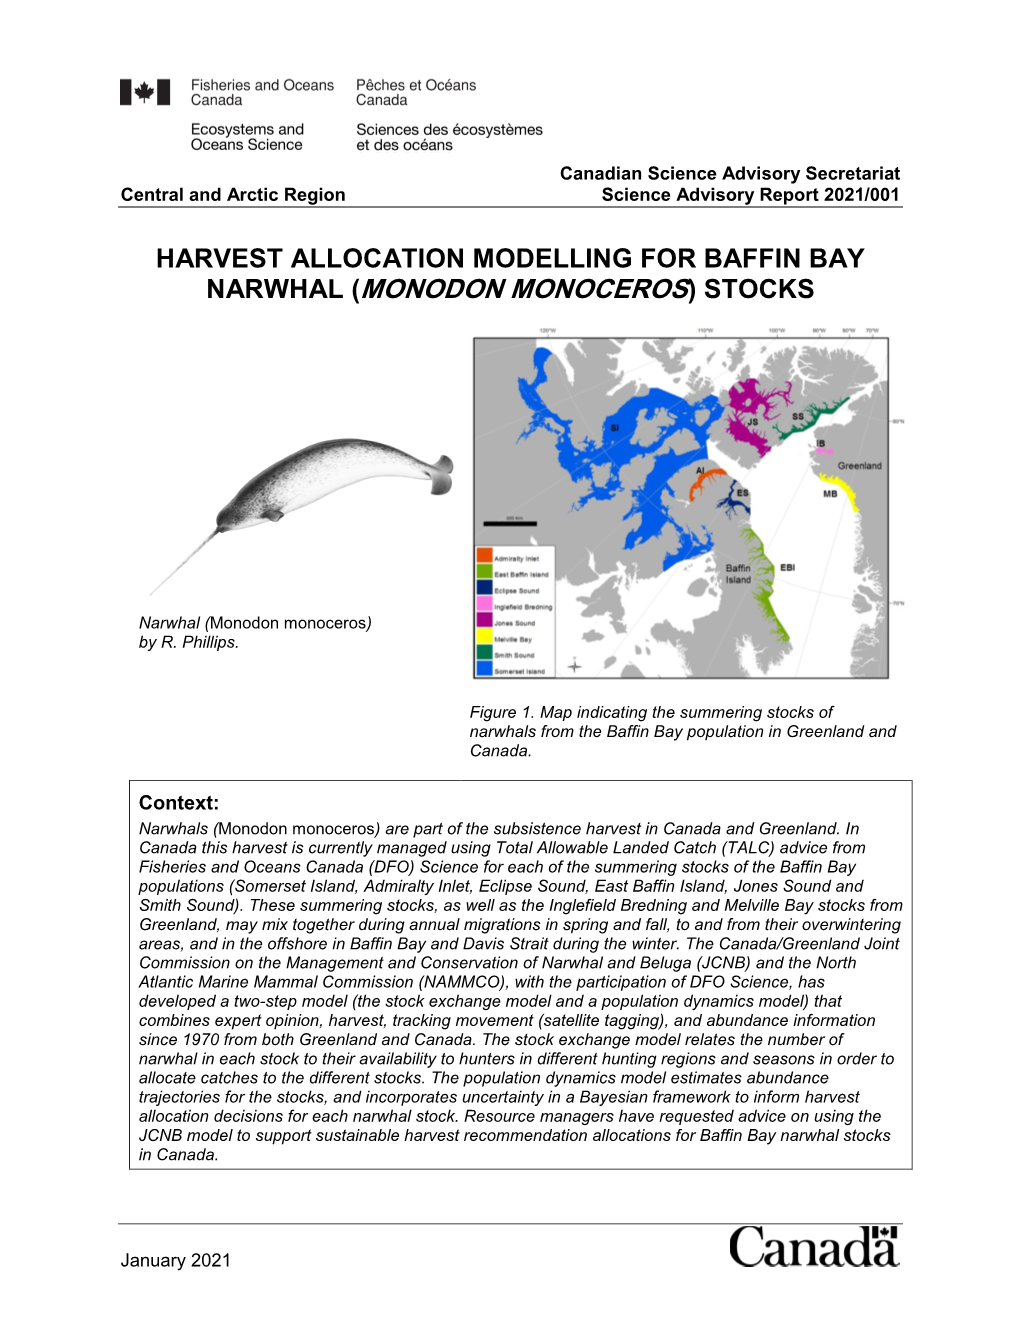 Harvest Allocation Modelling for Baffin Bay Narwhal (Monodon Monoceros) Stocks